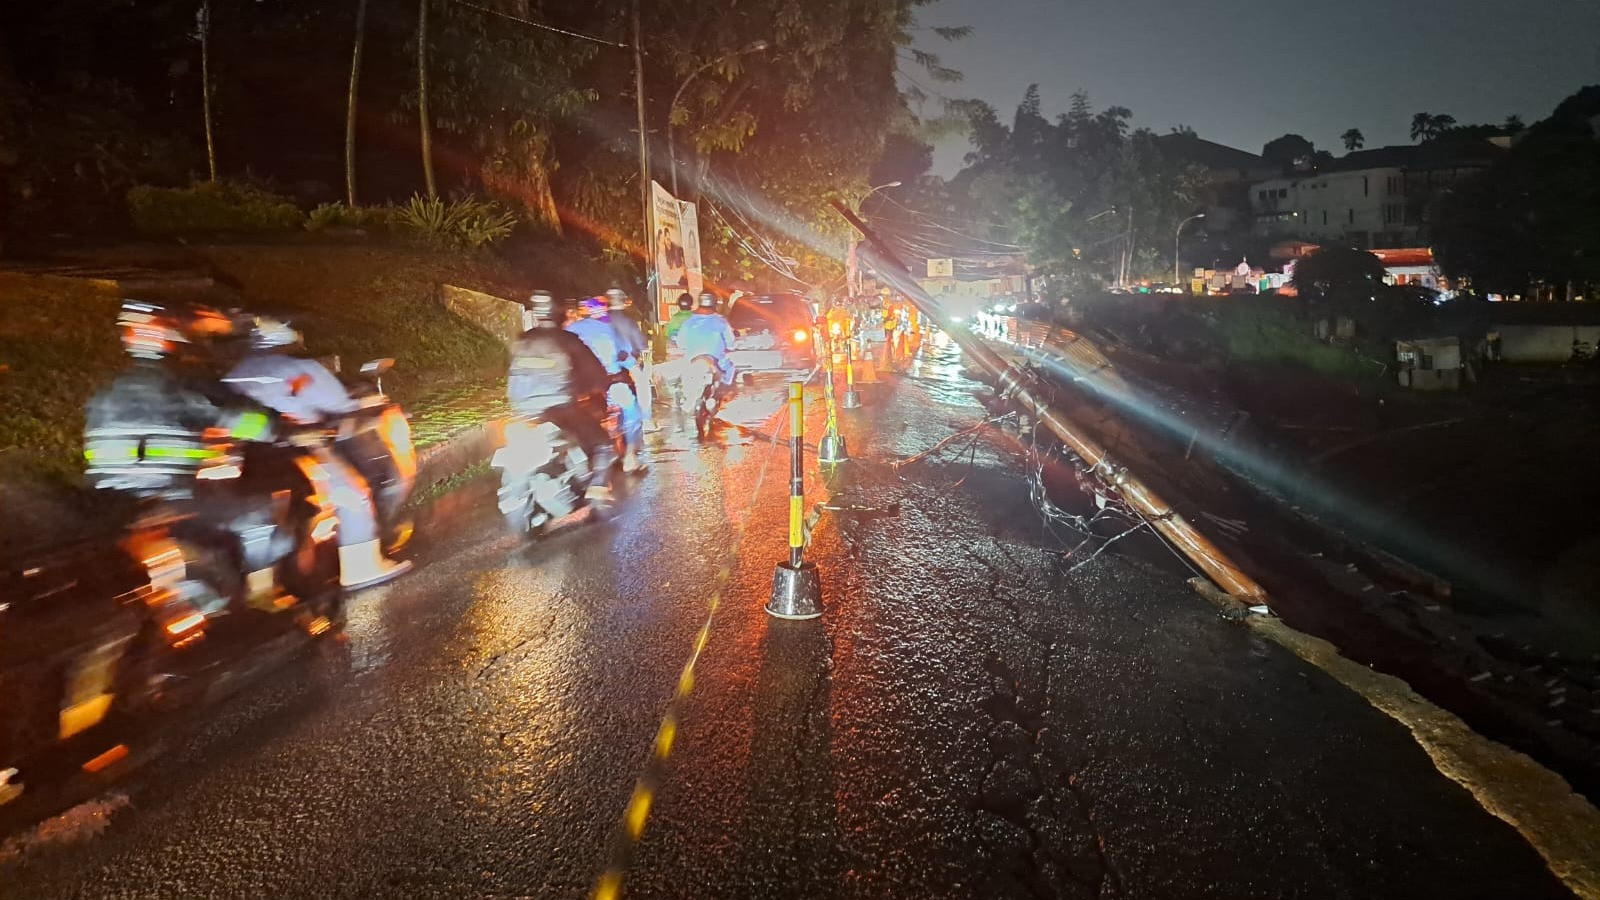 Longsor sedalam 20 meter dengan lebar 60 meter melanda kawasan Batutulis, Kota Bogor.